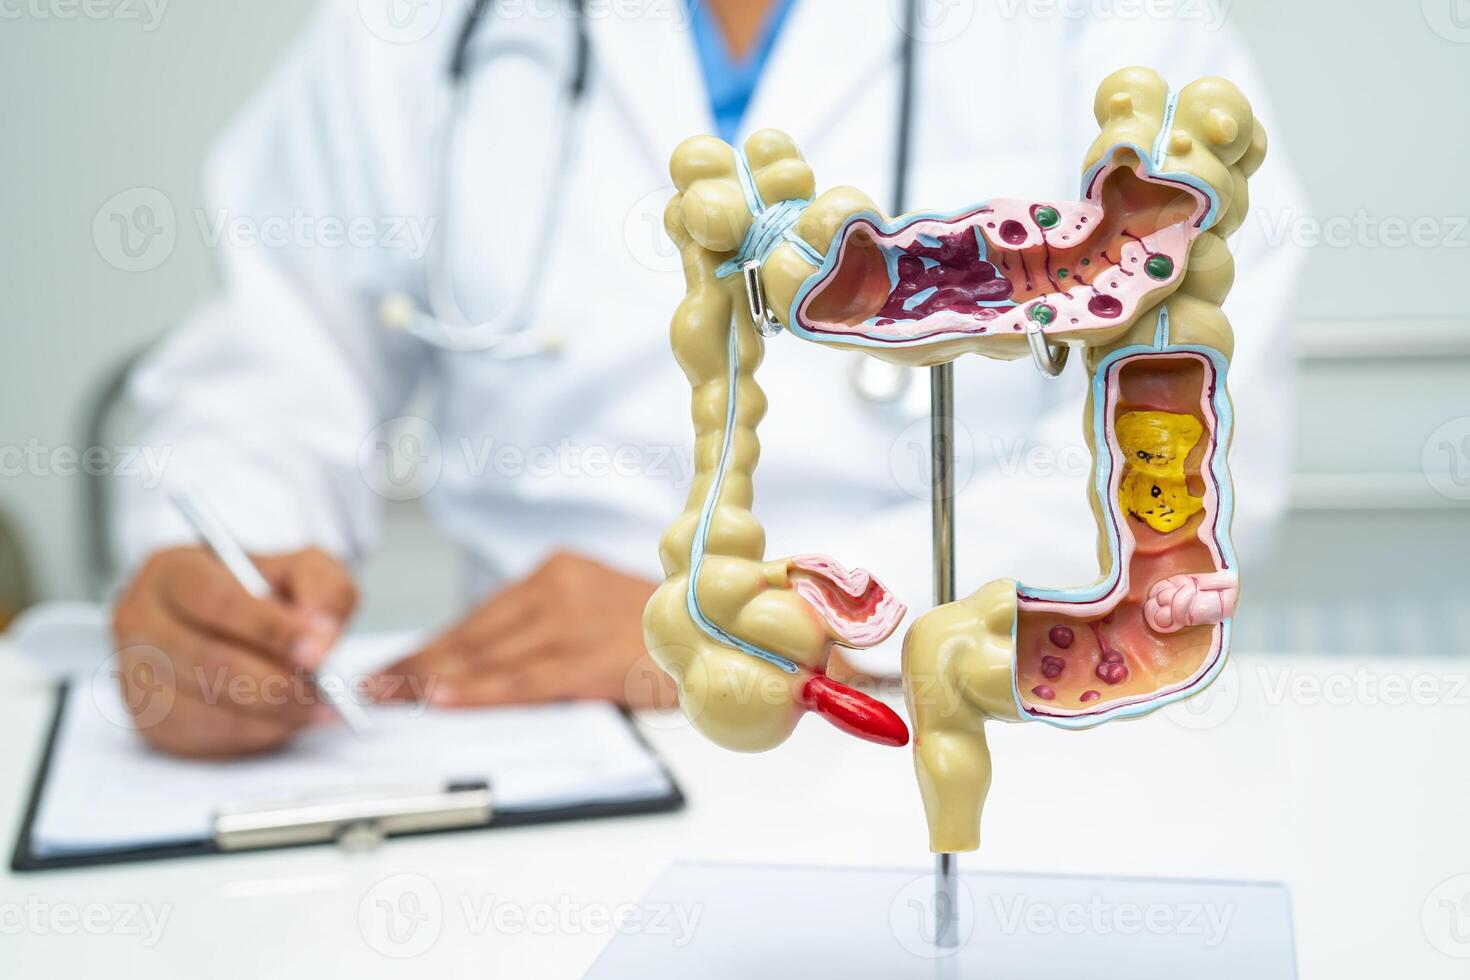 darm, bijlage en spijsvertering systeem, dokter Holding anatomie model- voor studie diagnose en behandeling in ziekenhuis. foto